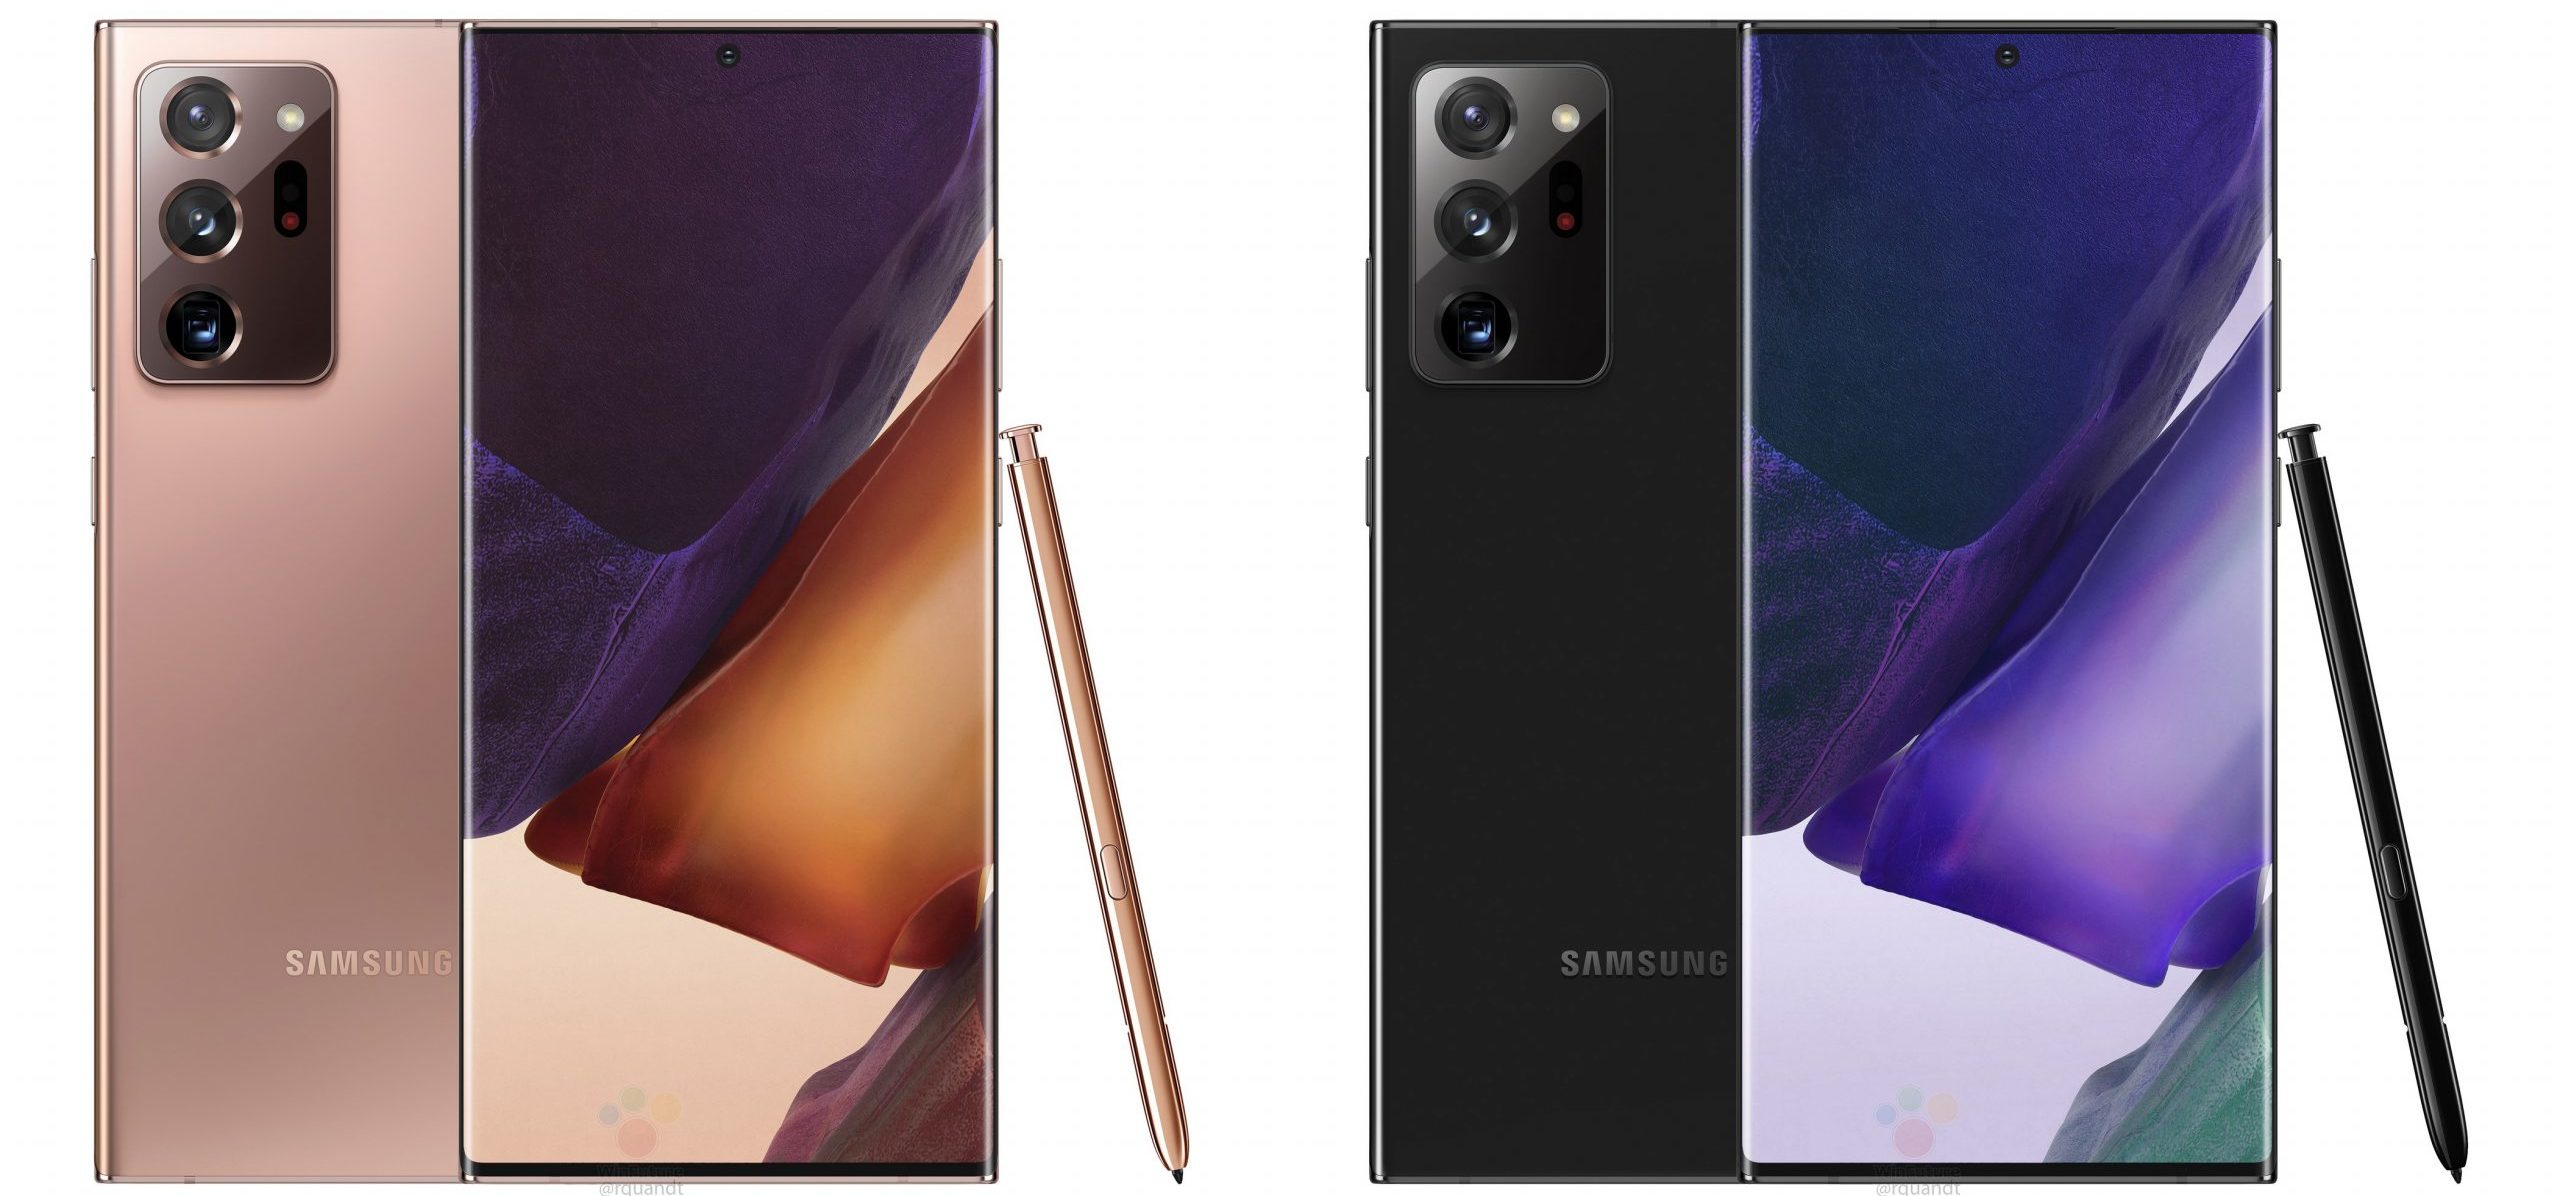 Pārskats par viedtālruņiem Samsung Galaxy Note20 un Note20 Ultra